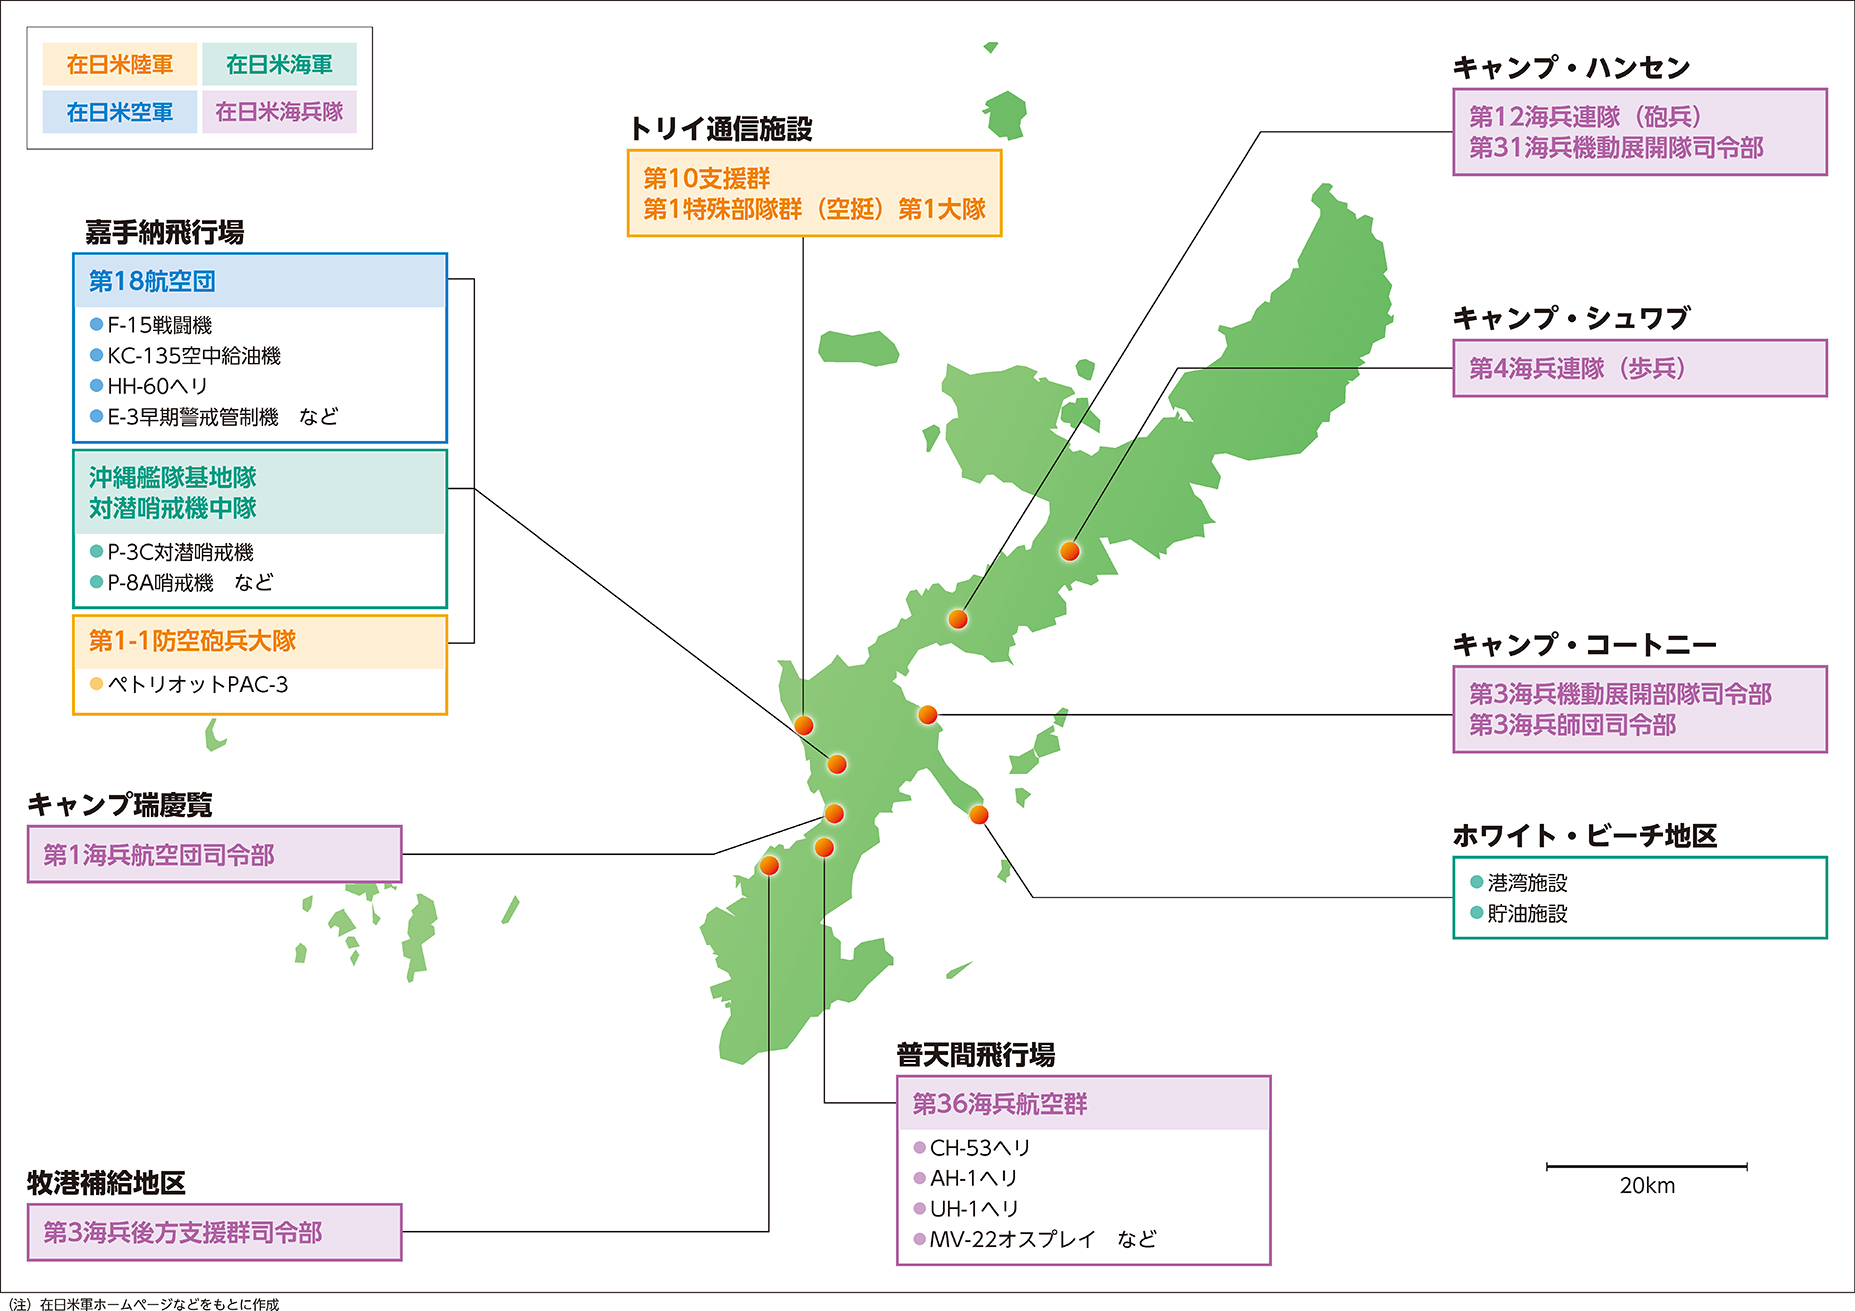 沖縄における在日米軍主要部隊などの配置図（平成30年度末現在）